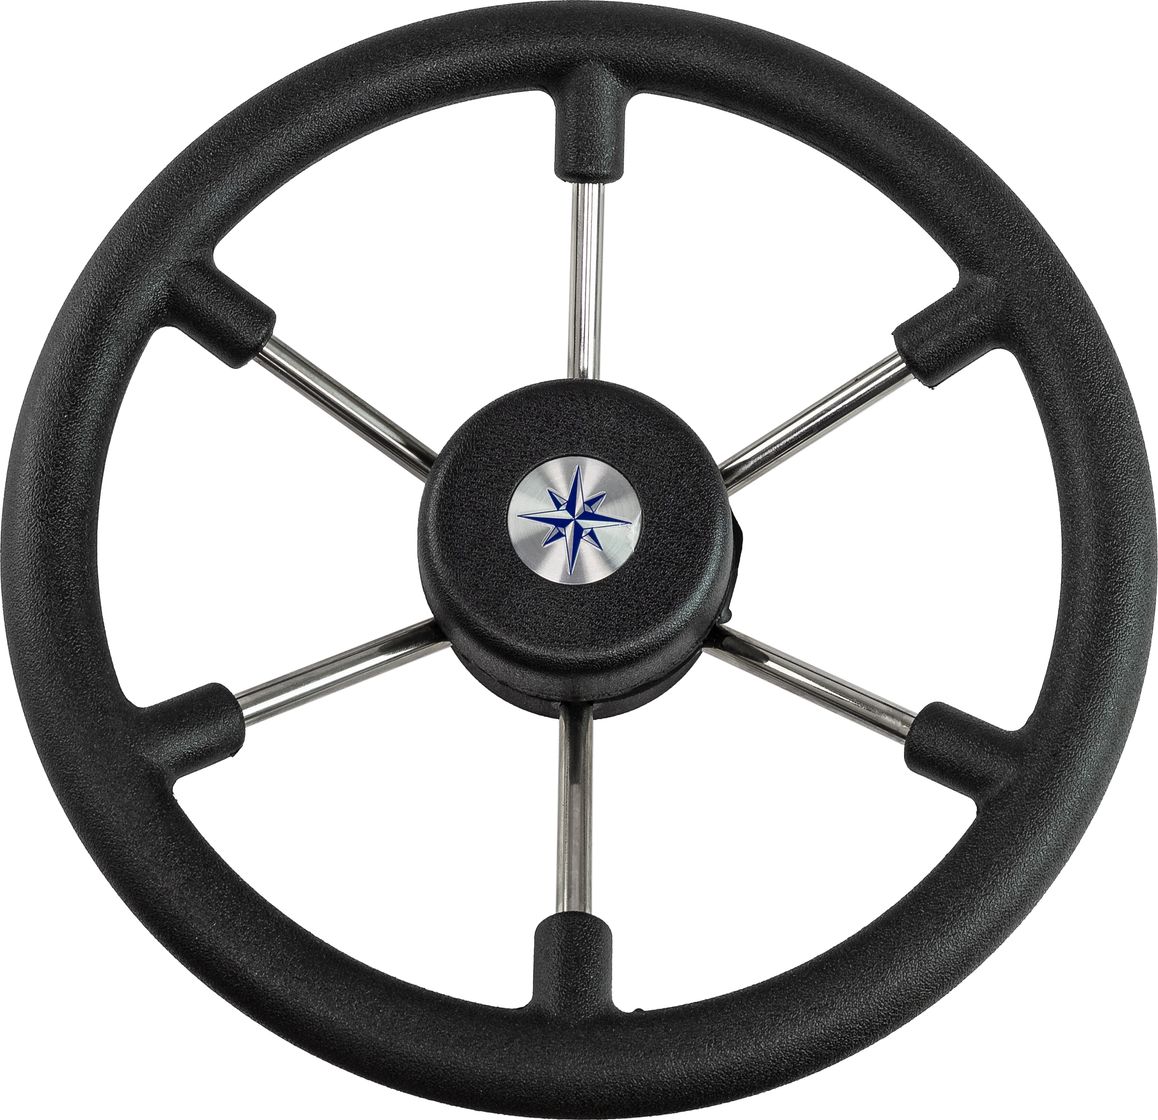 Рулевое колесо LEADER TANEGUM черный обод серебряные спицы д. 330 мм VN7330-01 заглушка декоративная для рулевых колес leader tanegum черная vn00010 01